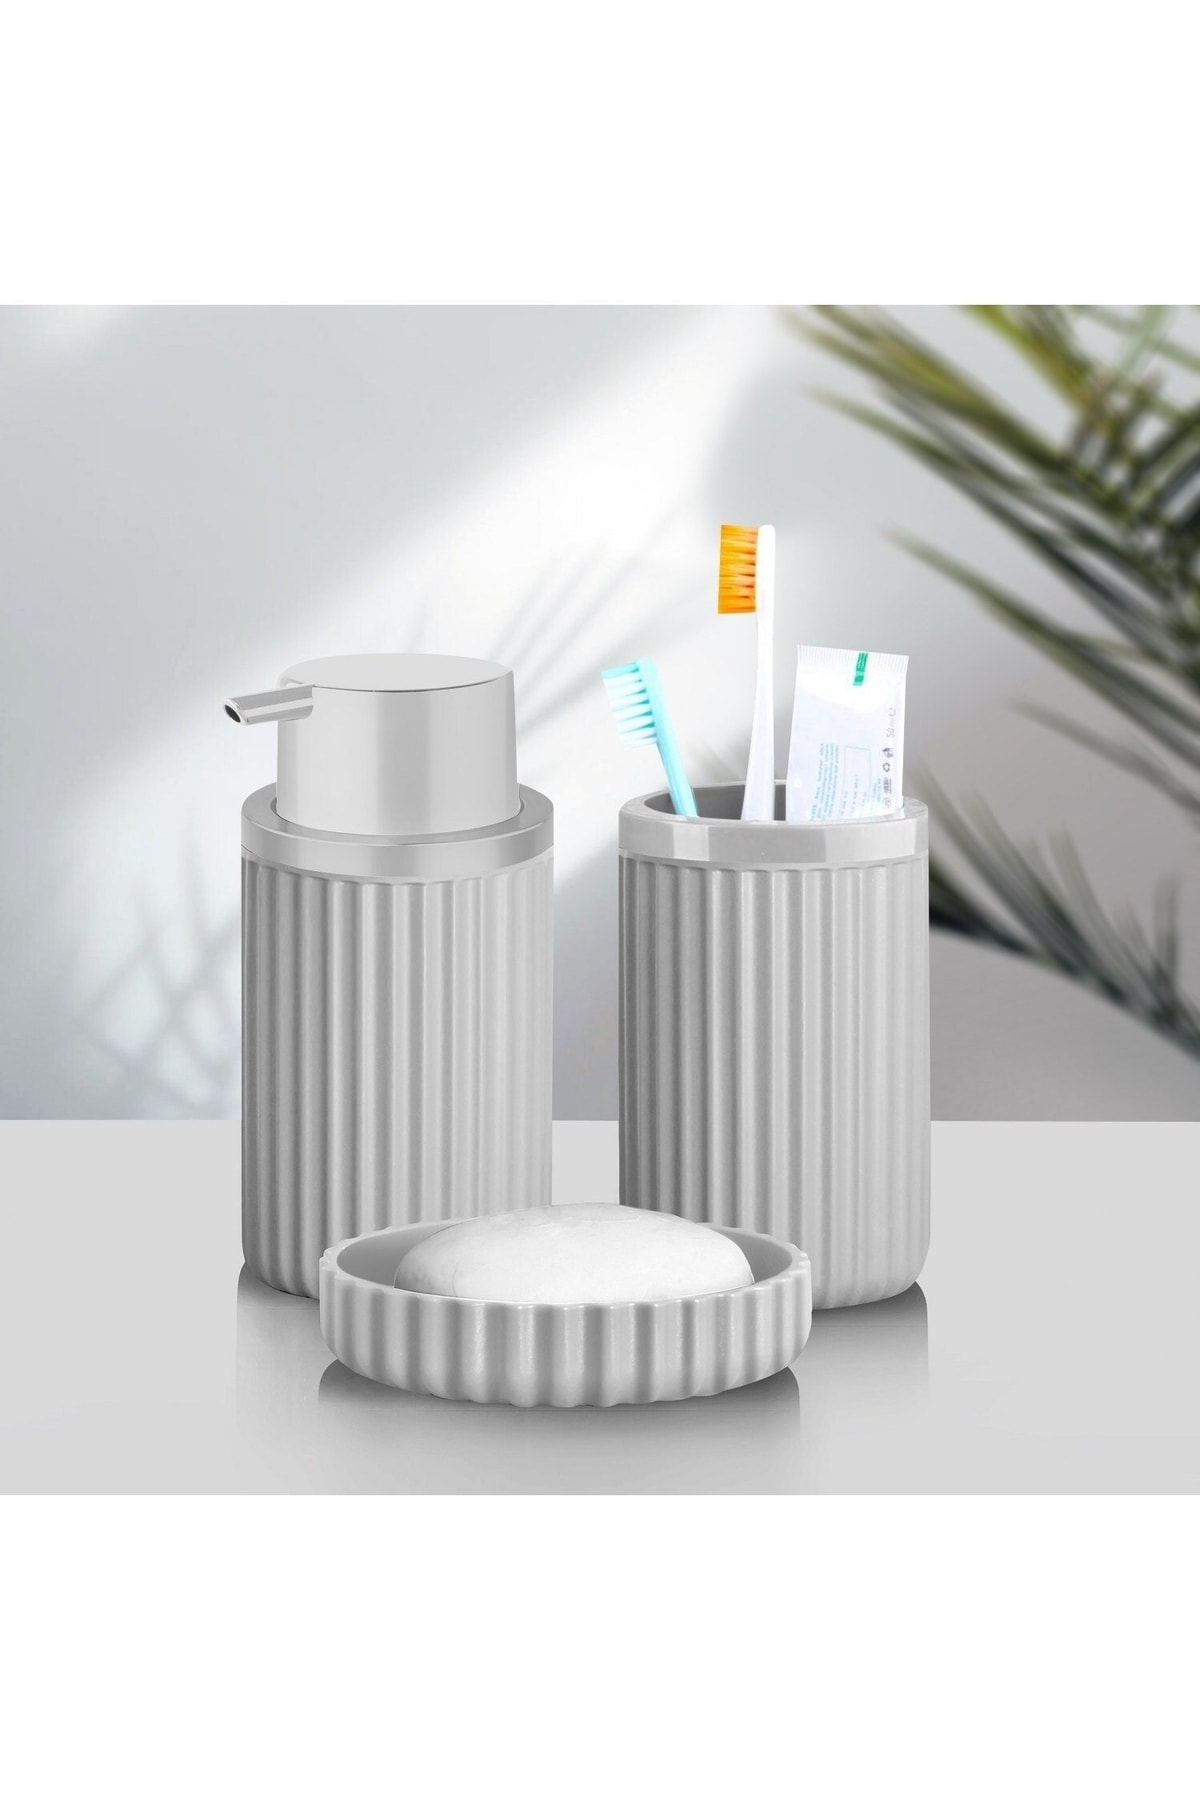 Sas Haus Banyo Takımı Diş Fırçalık Sıvı Sabunluk Katı Sabunluk 3'lü Set Gri